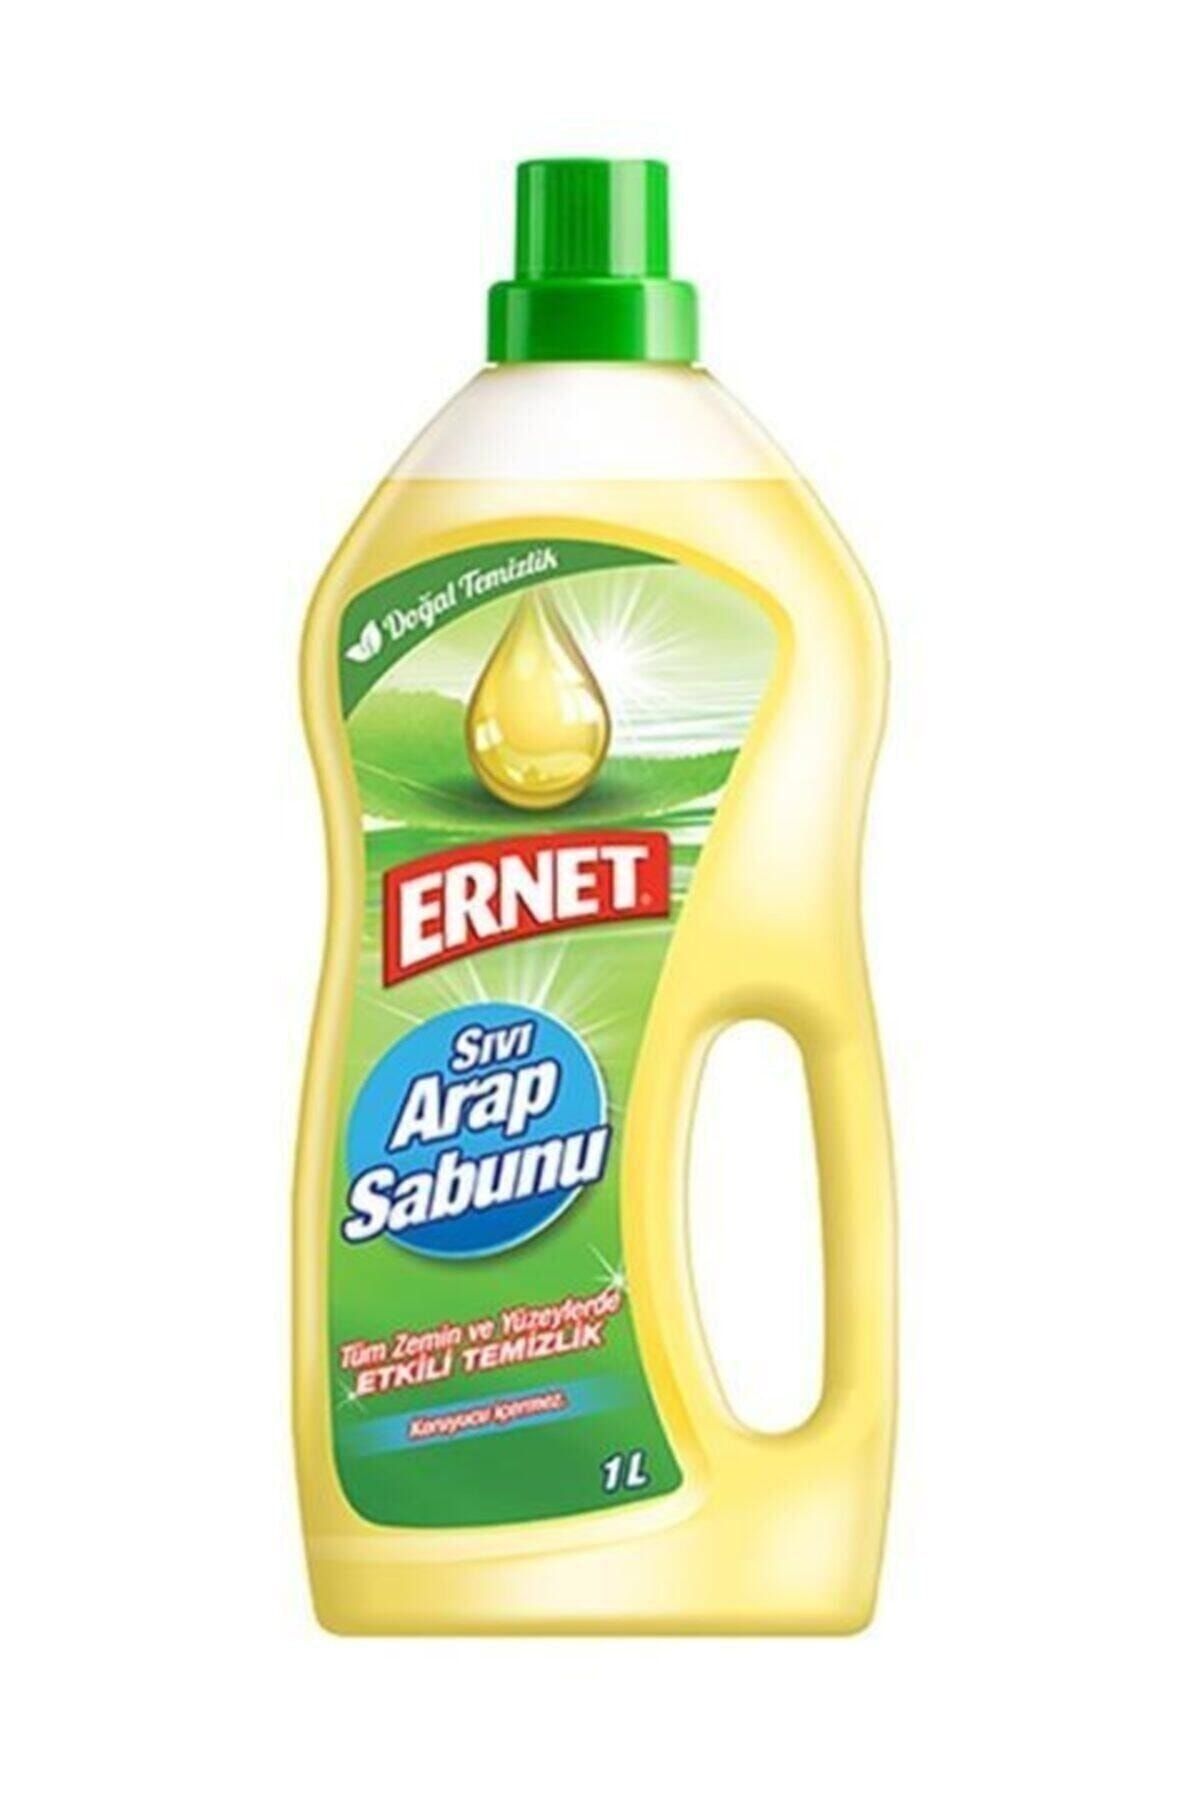 Ernet Ravzahanem Sıvı Arap Sabunu (1000 ML)